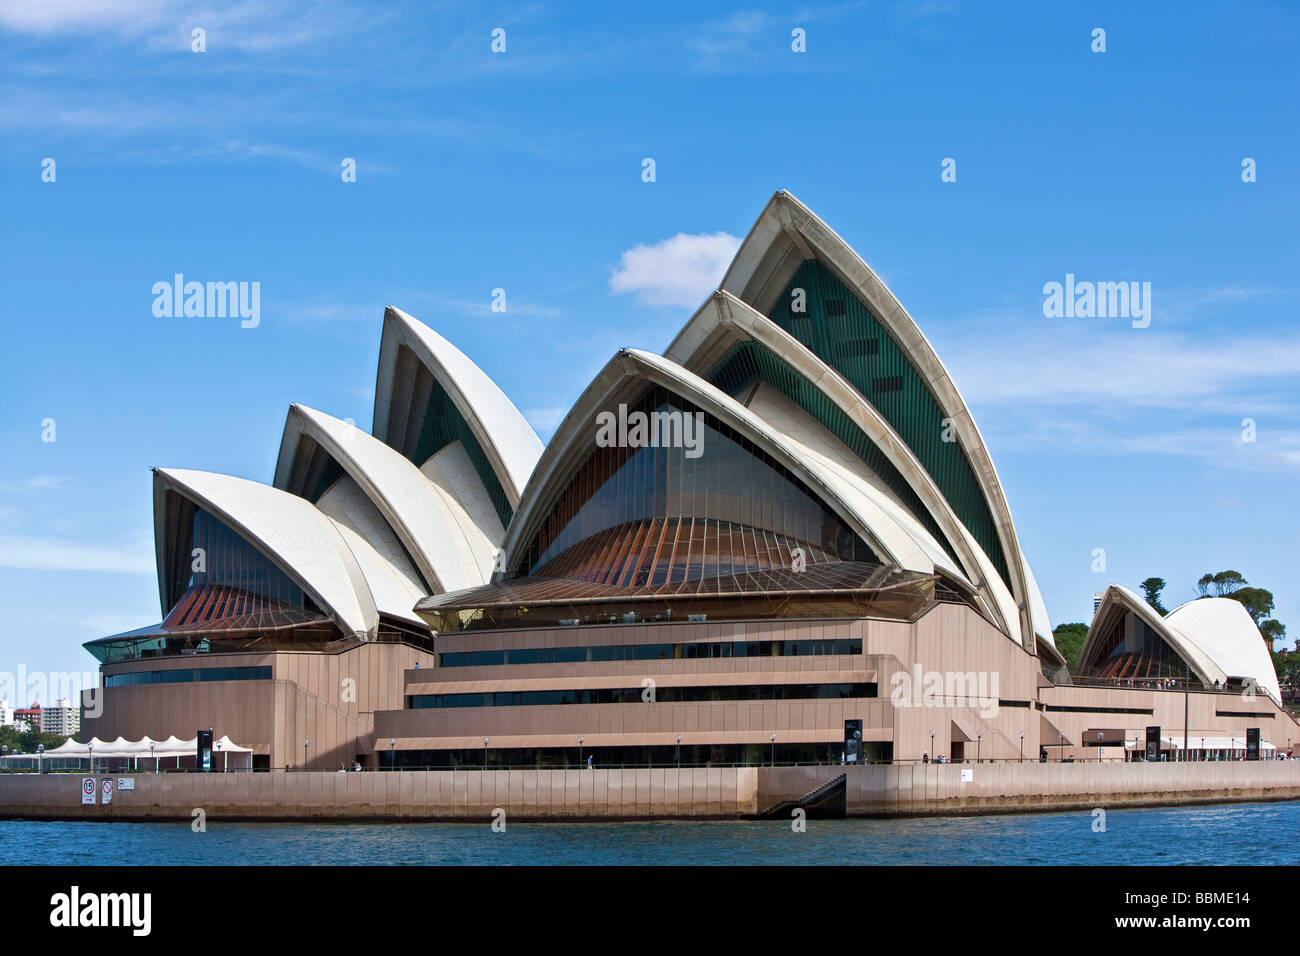 Australia Nuovo Galles del Sud. L'iconica Opera House di Sydney. Foto Stock